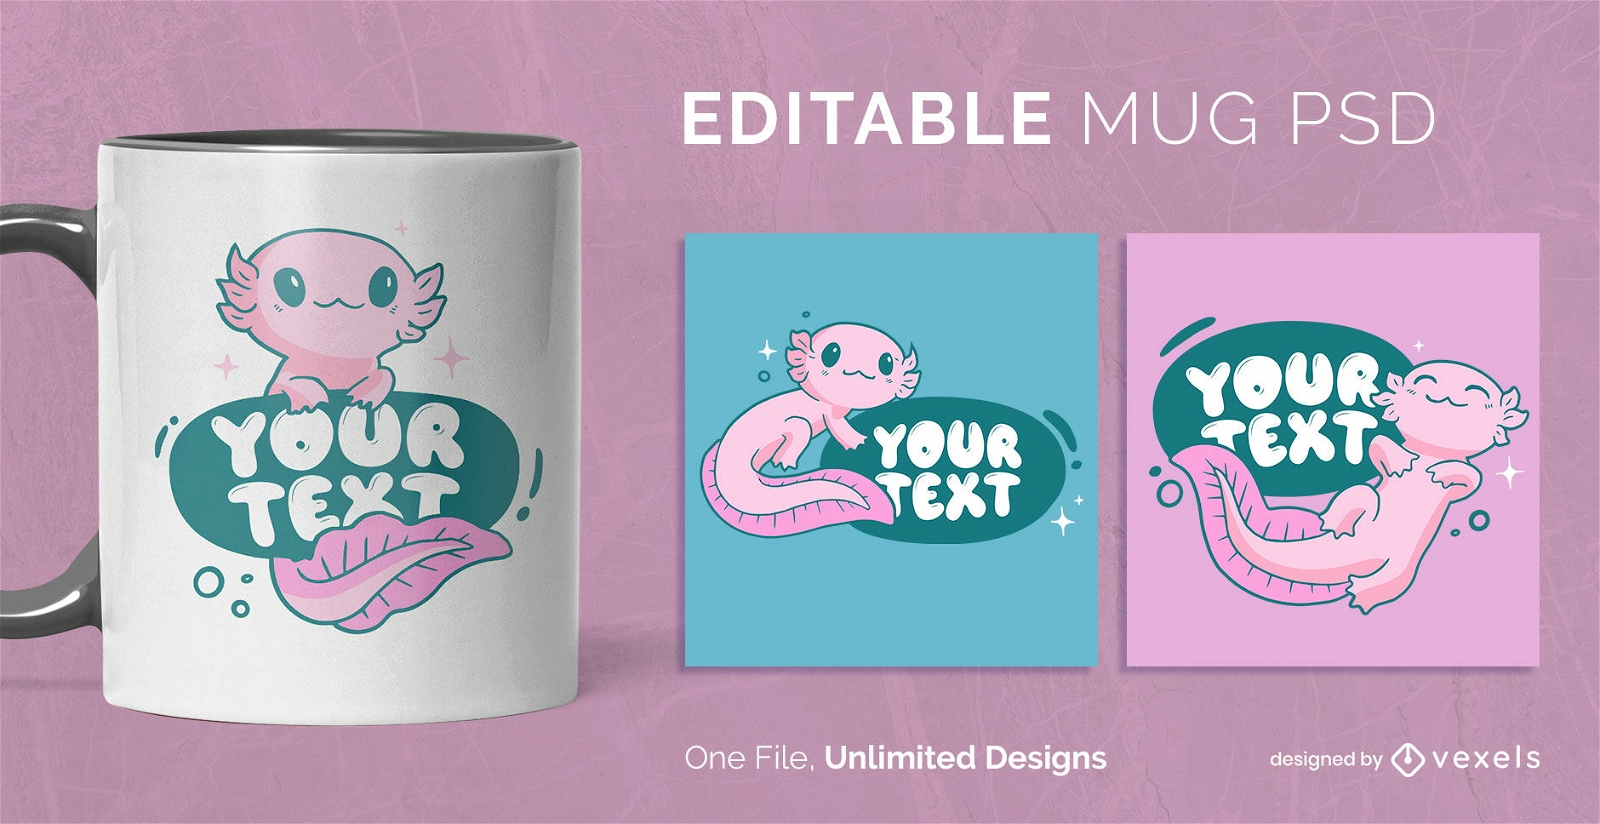 https://images.vexels.com/content/311653/preview/cute-axolotl-scalable-mug-template-058d7a.png